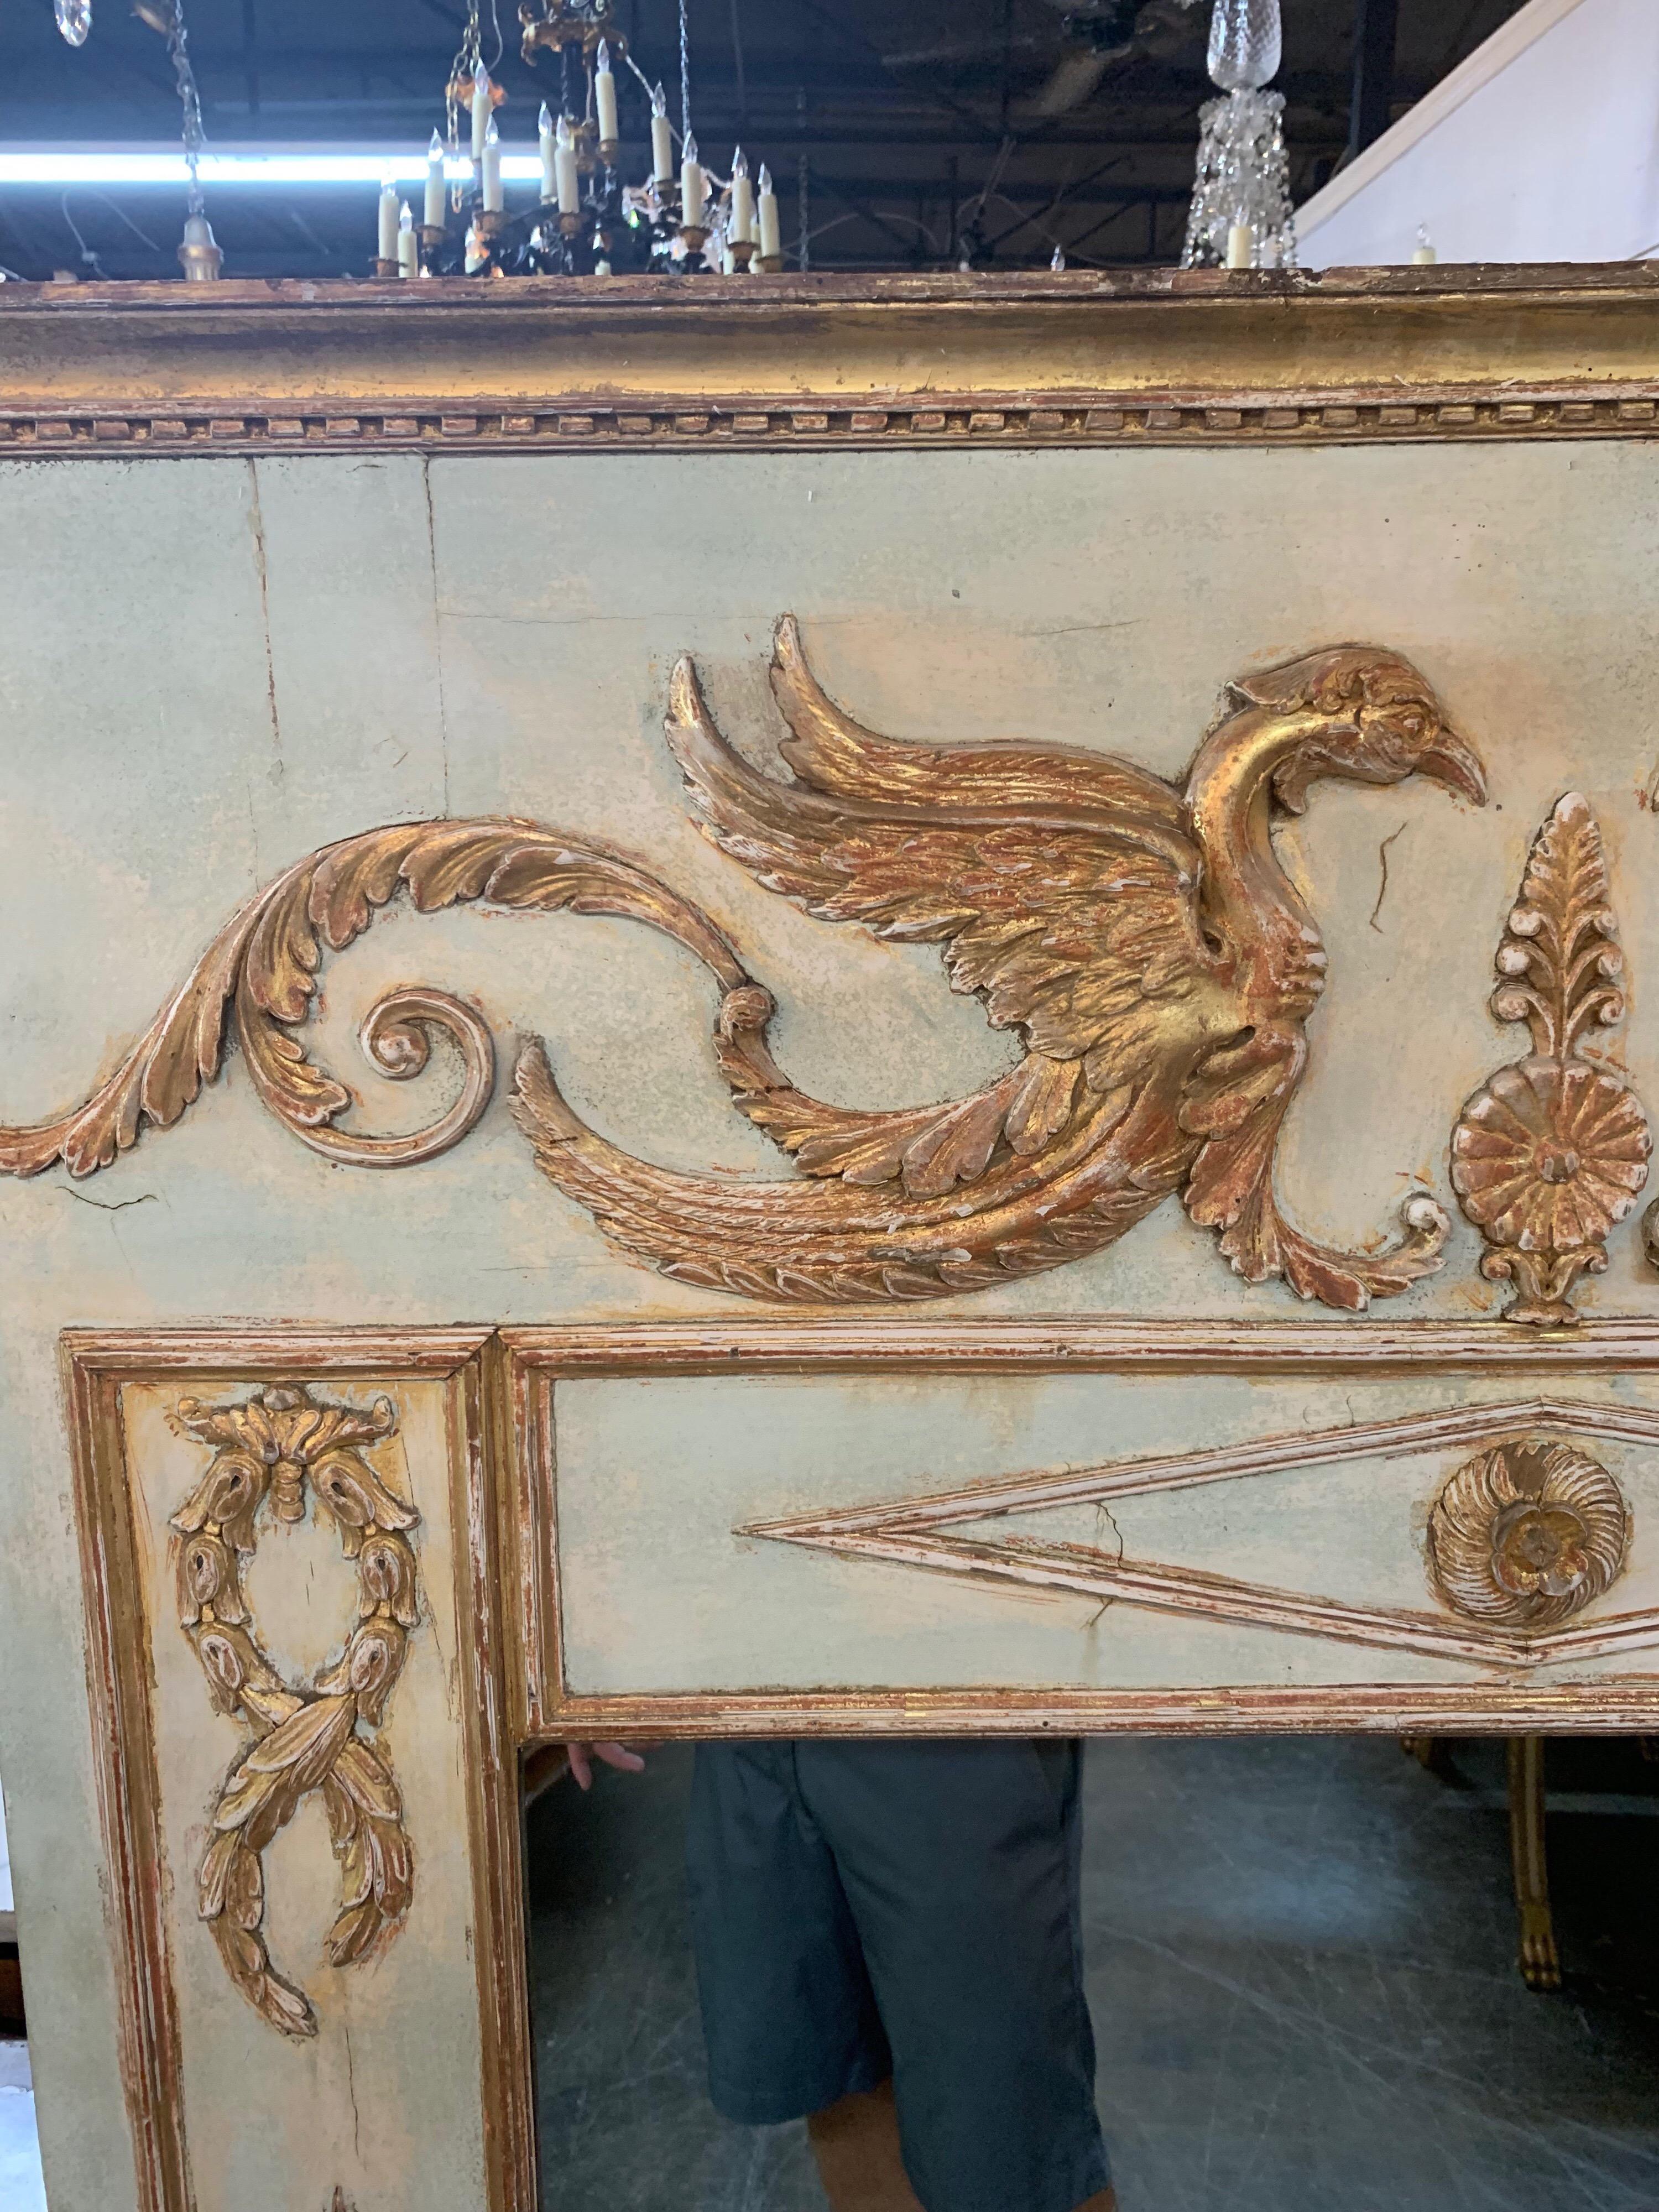 Miroir trumeau néoclassique Empire français du début du 19e siècle, sculpté et doré à la feuille.
Sculpture très intéressante de 2 dragons et d'autres feuilles, volutes et diamants. Belle patine sur la pièce également. Très impressionnant !